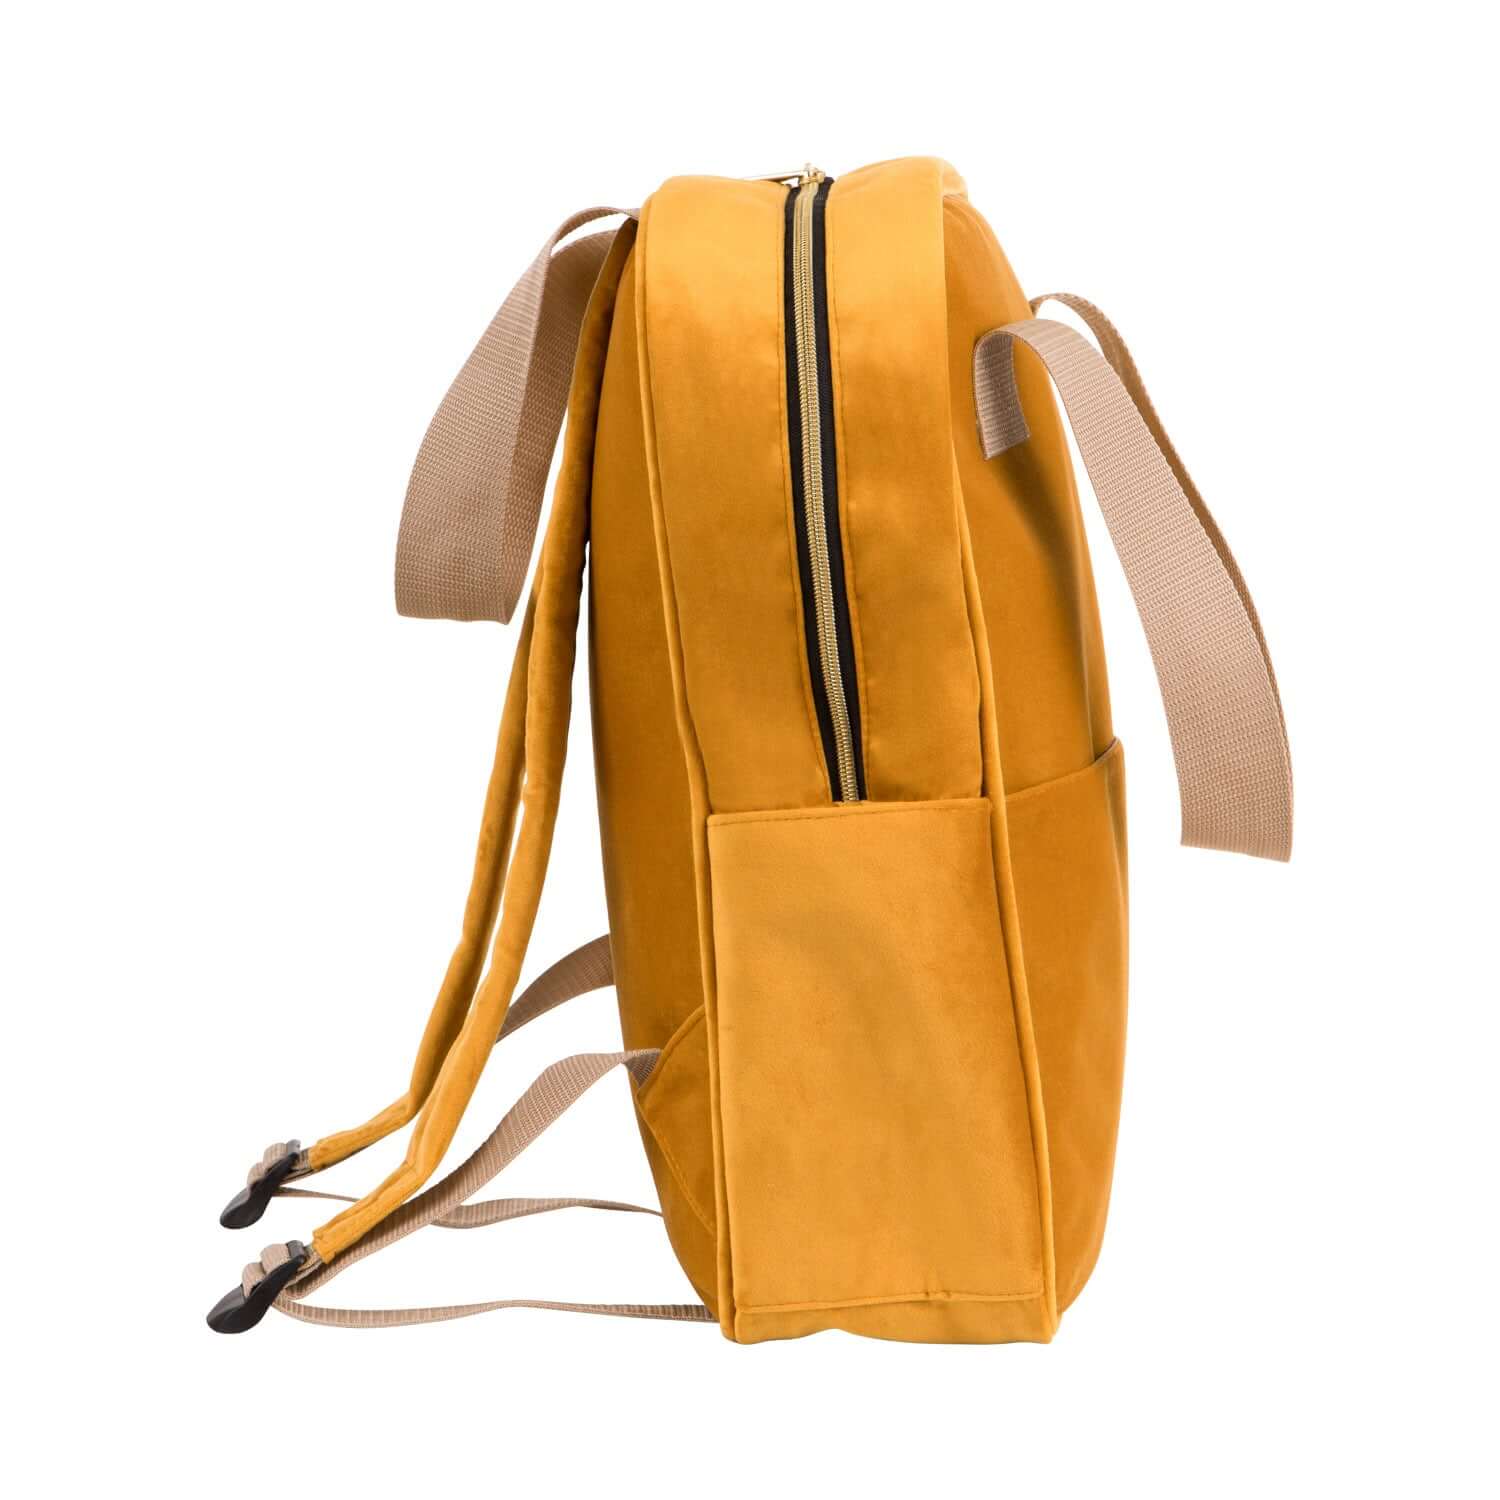 velvet yellow backpack ladies backpack for work small backpack for kindergarten 